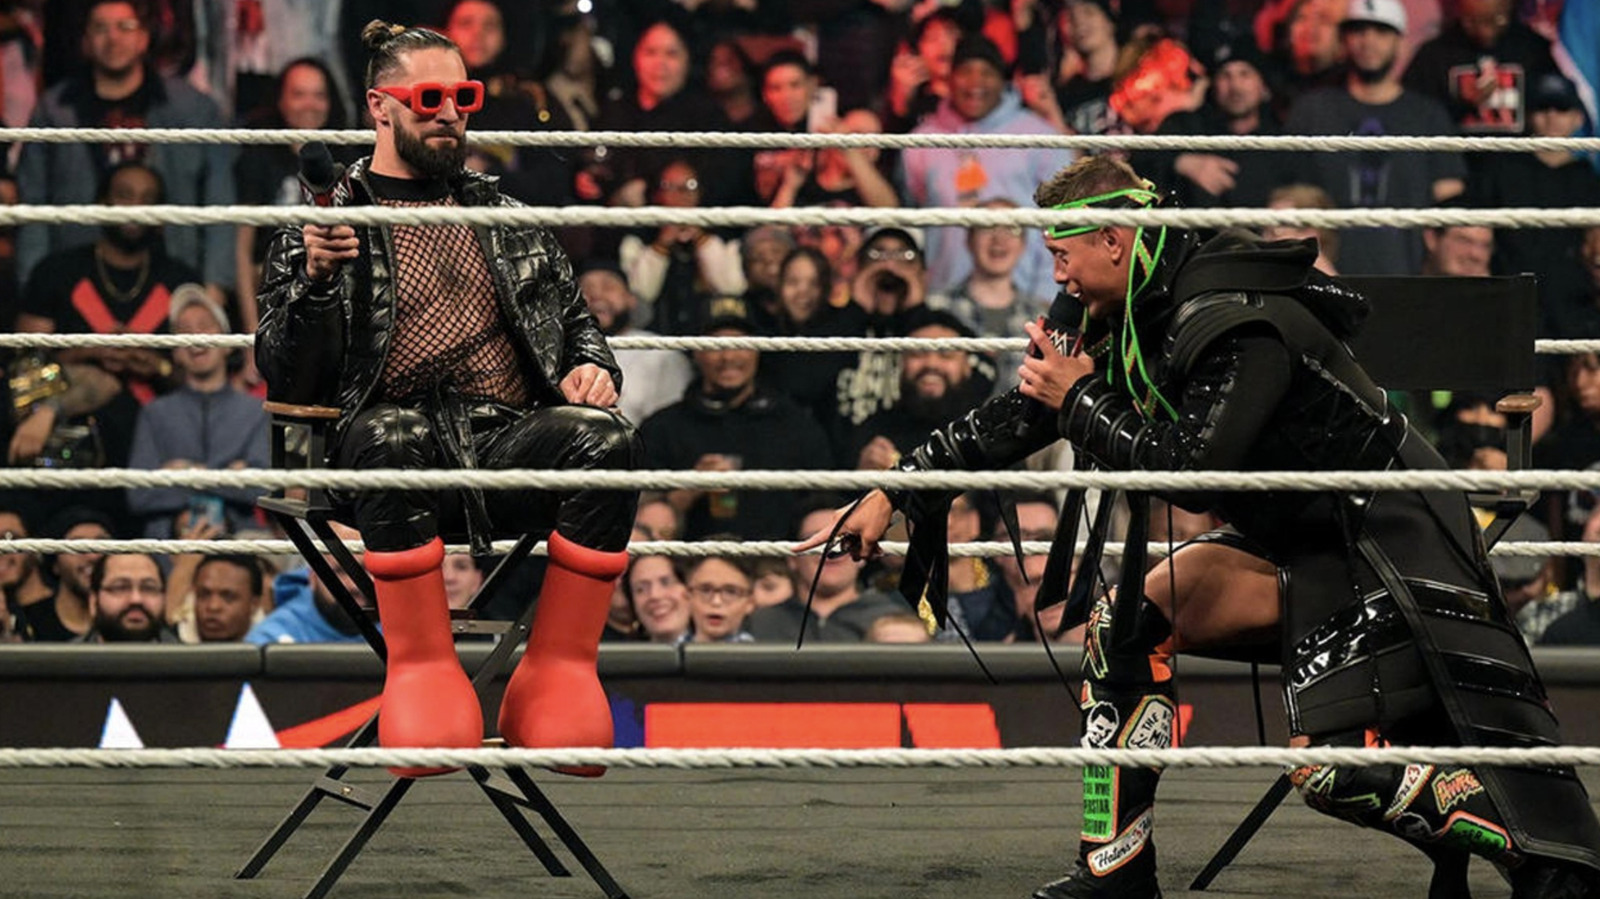 El campeón de WWE WHW Seth Rollins recuerda usar grandes botas rojas y elogia el estilo de Becky Lynch